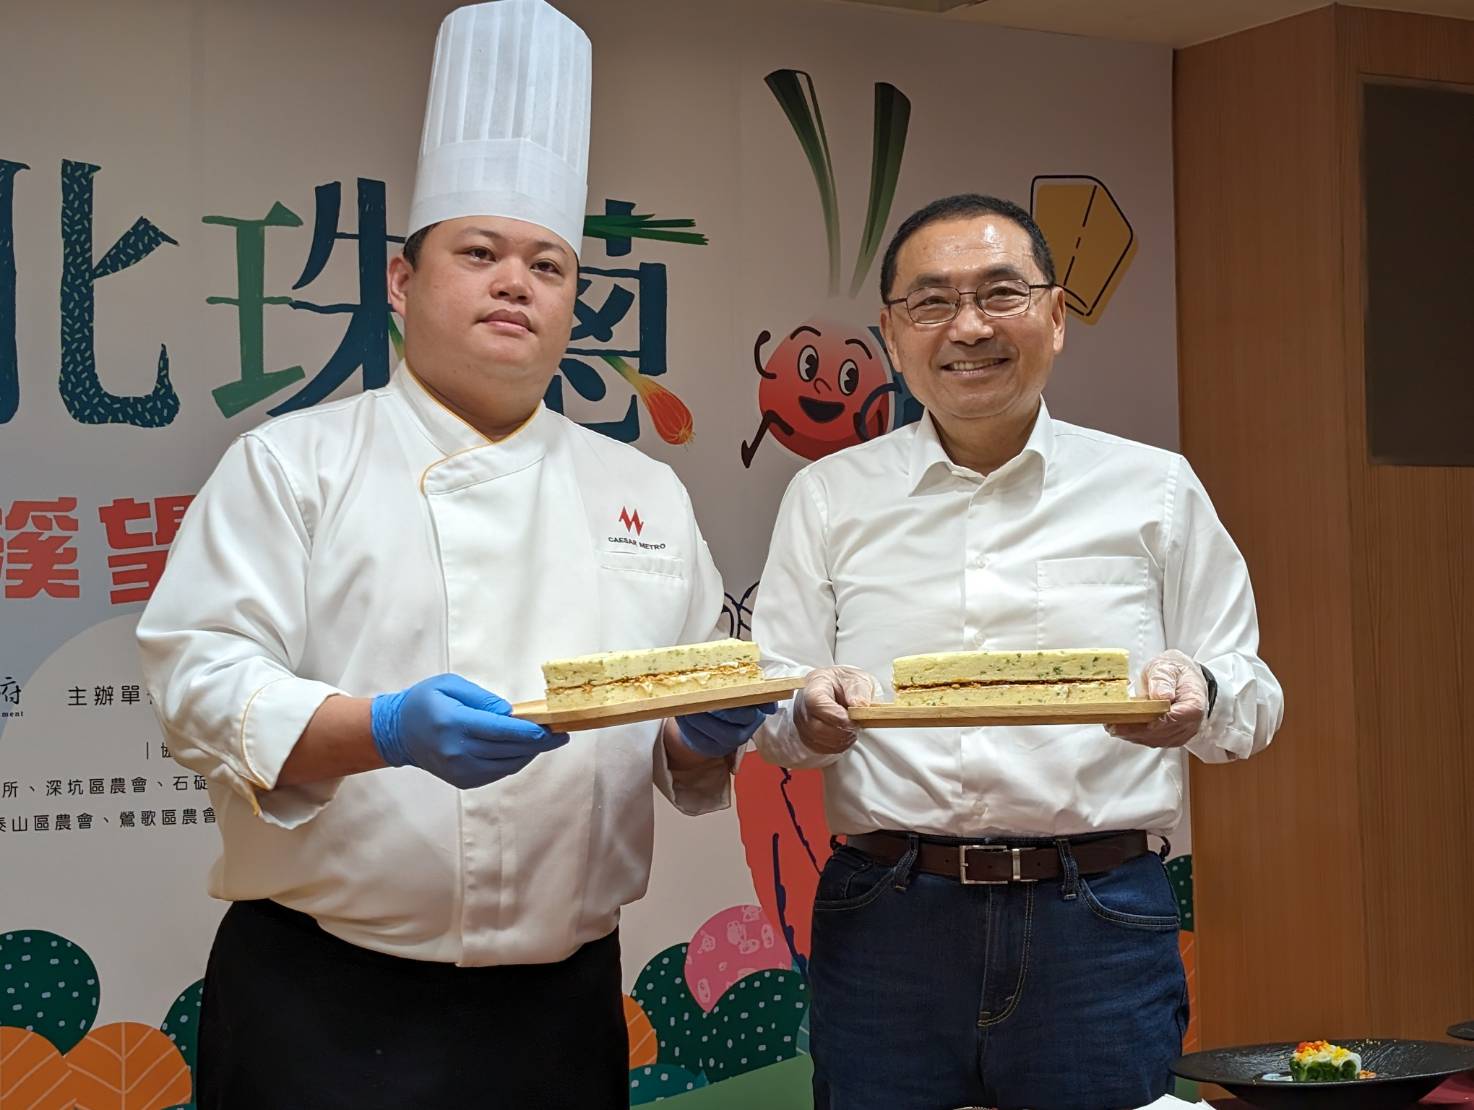  今年也與台北凱達大飯店合作推出平溪珠蔥特製的「蔥香鹹蛋糕」